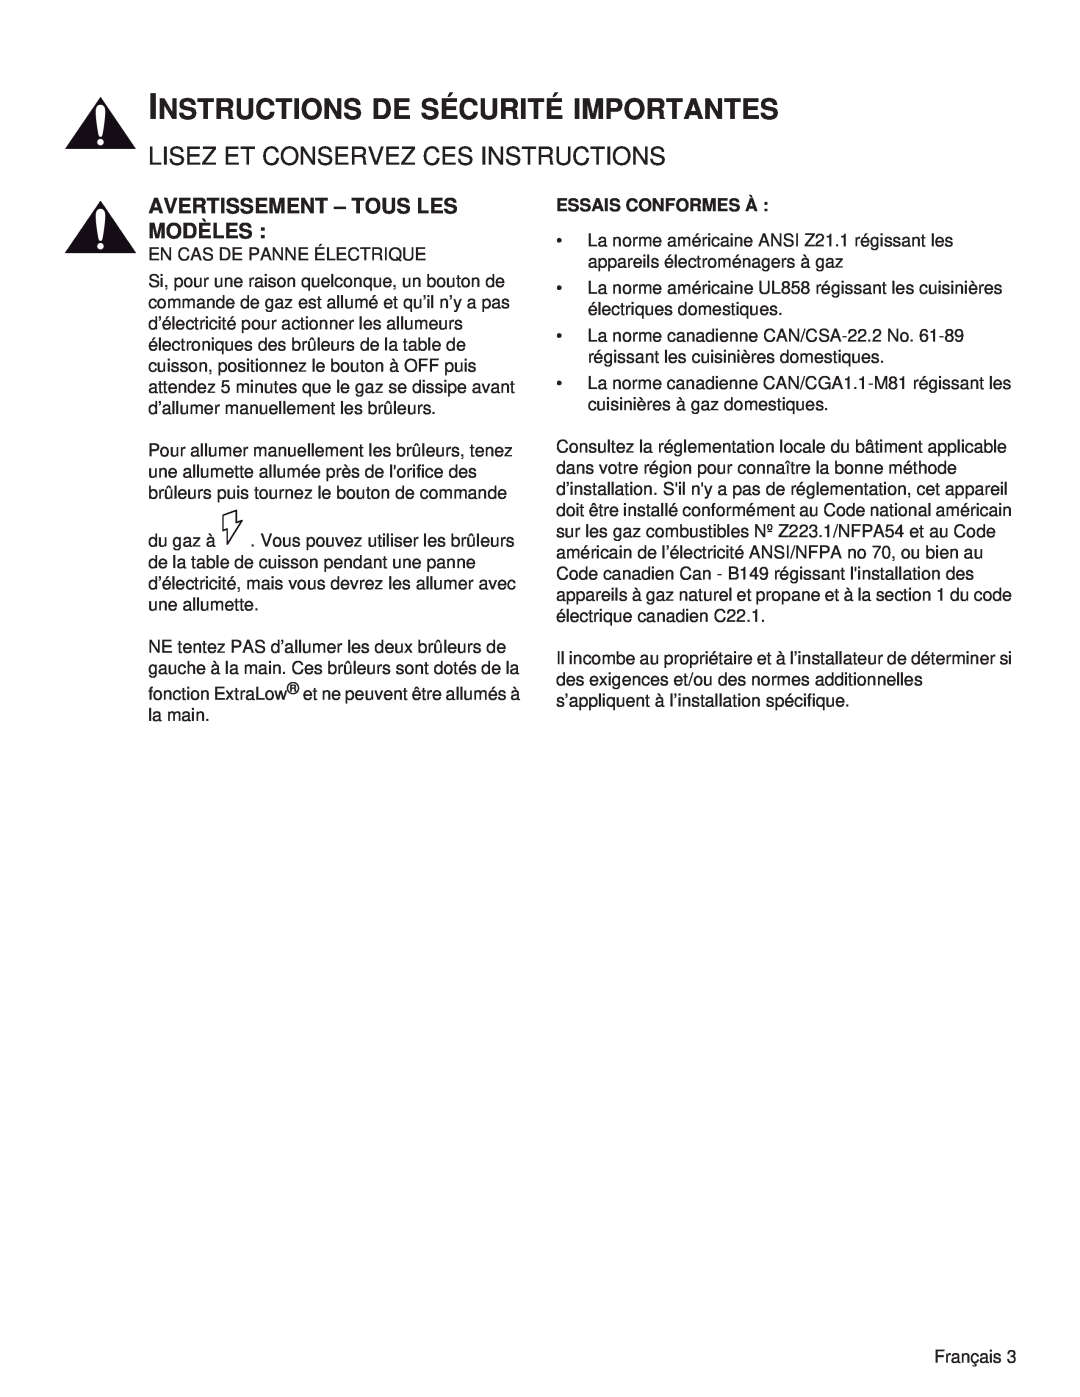 Thermador PRG48, PRL36, PRG30, PRL30, PRG36, PRL48 manual Instructions De Sécurité Importantes, Avertissement - Tous Les Modèles 